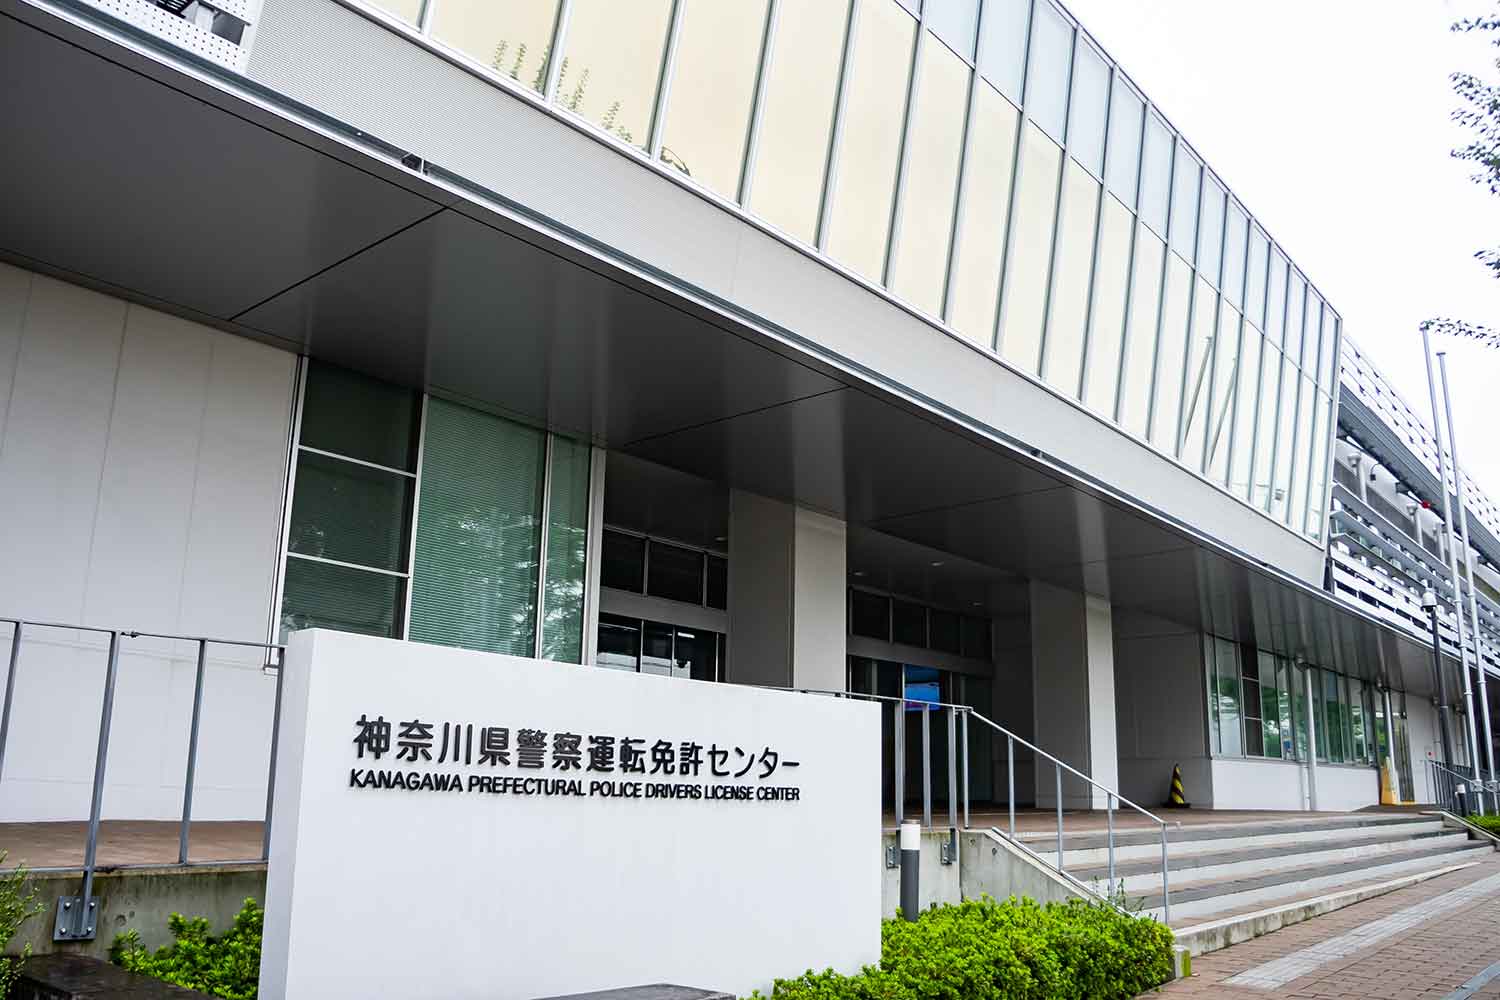 神奈川県警察運転免許センターの建物